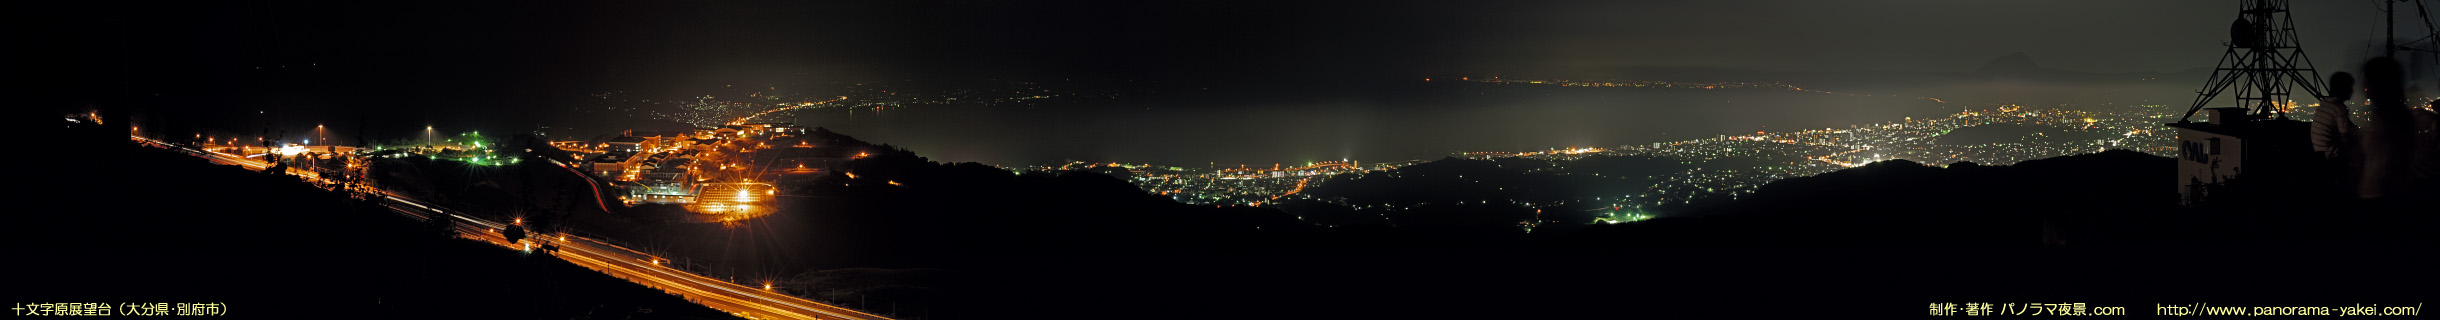 十文字原展望台からのパノラマ夜景写真